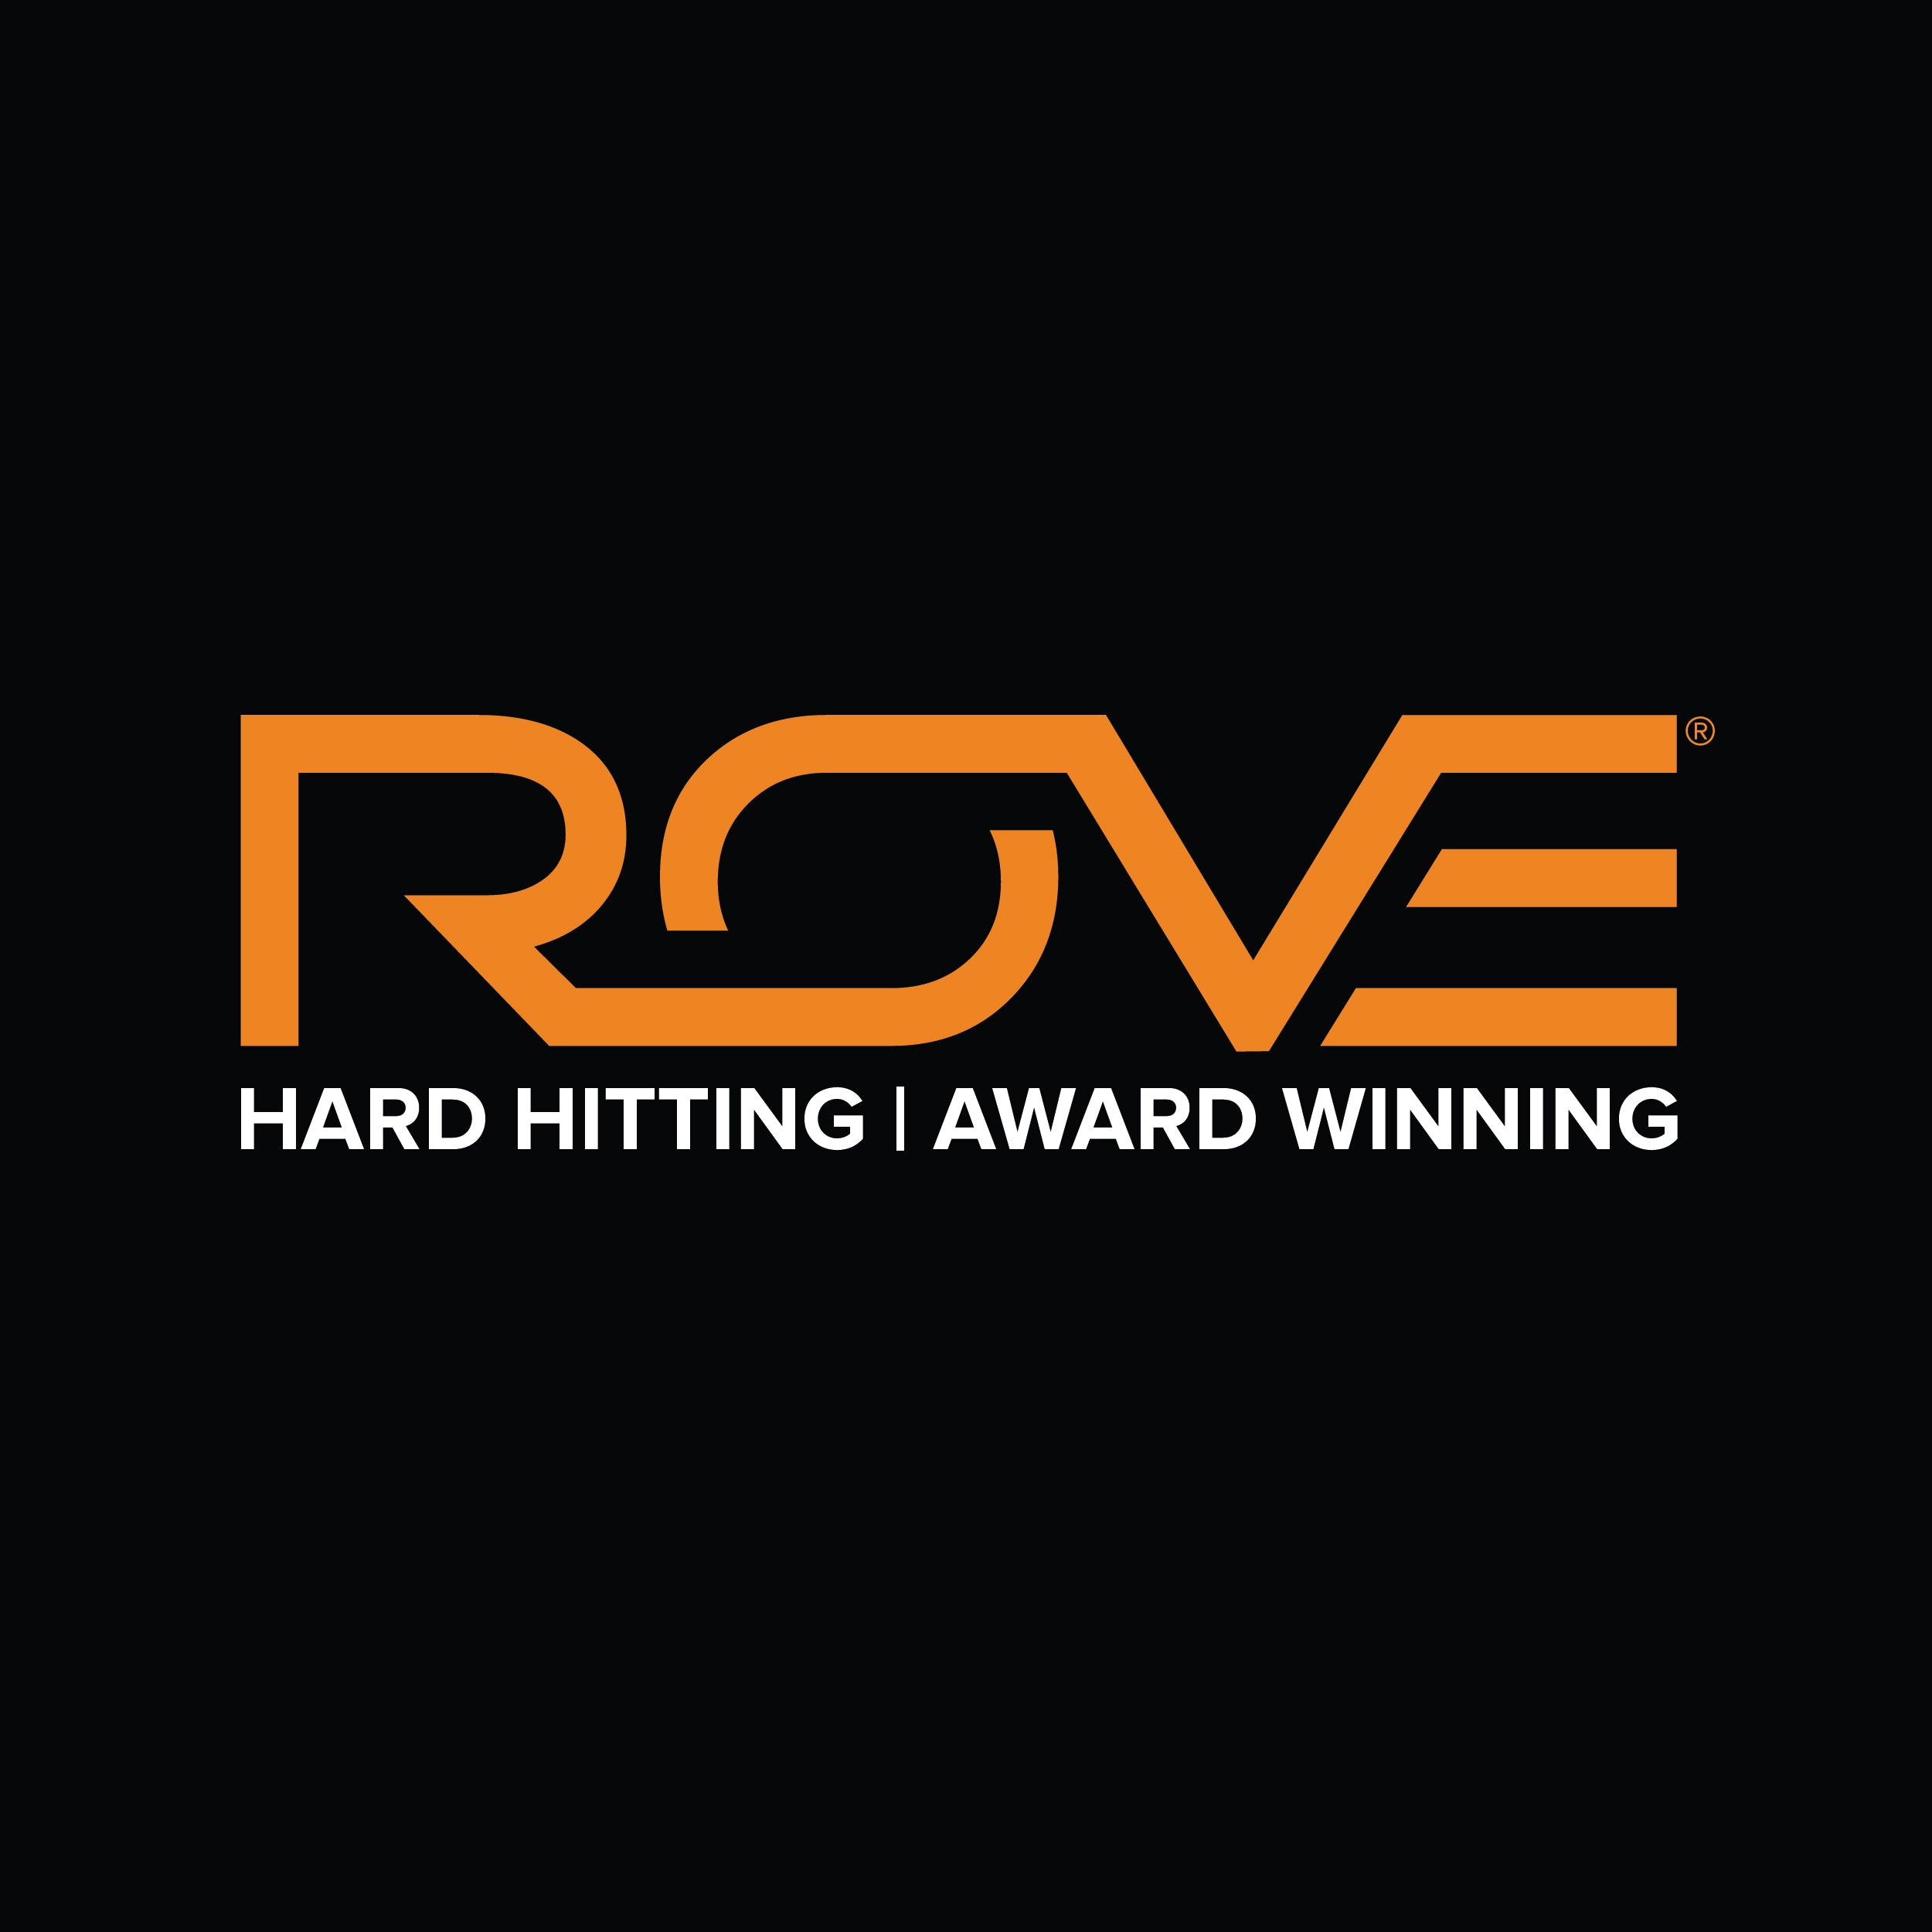 rovebrand.com